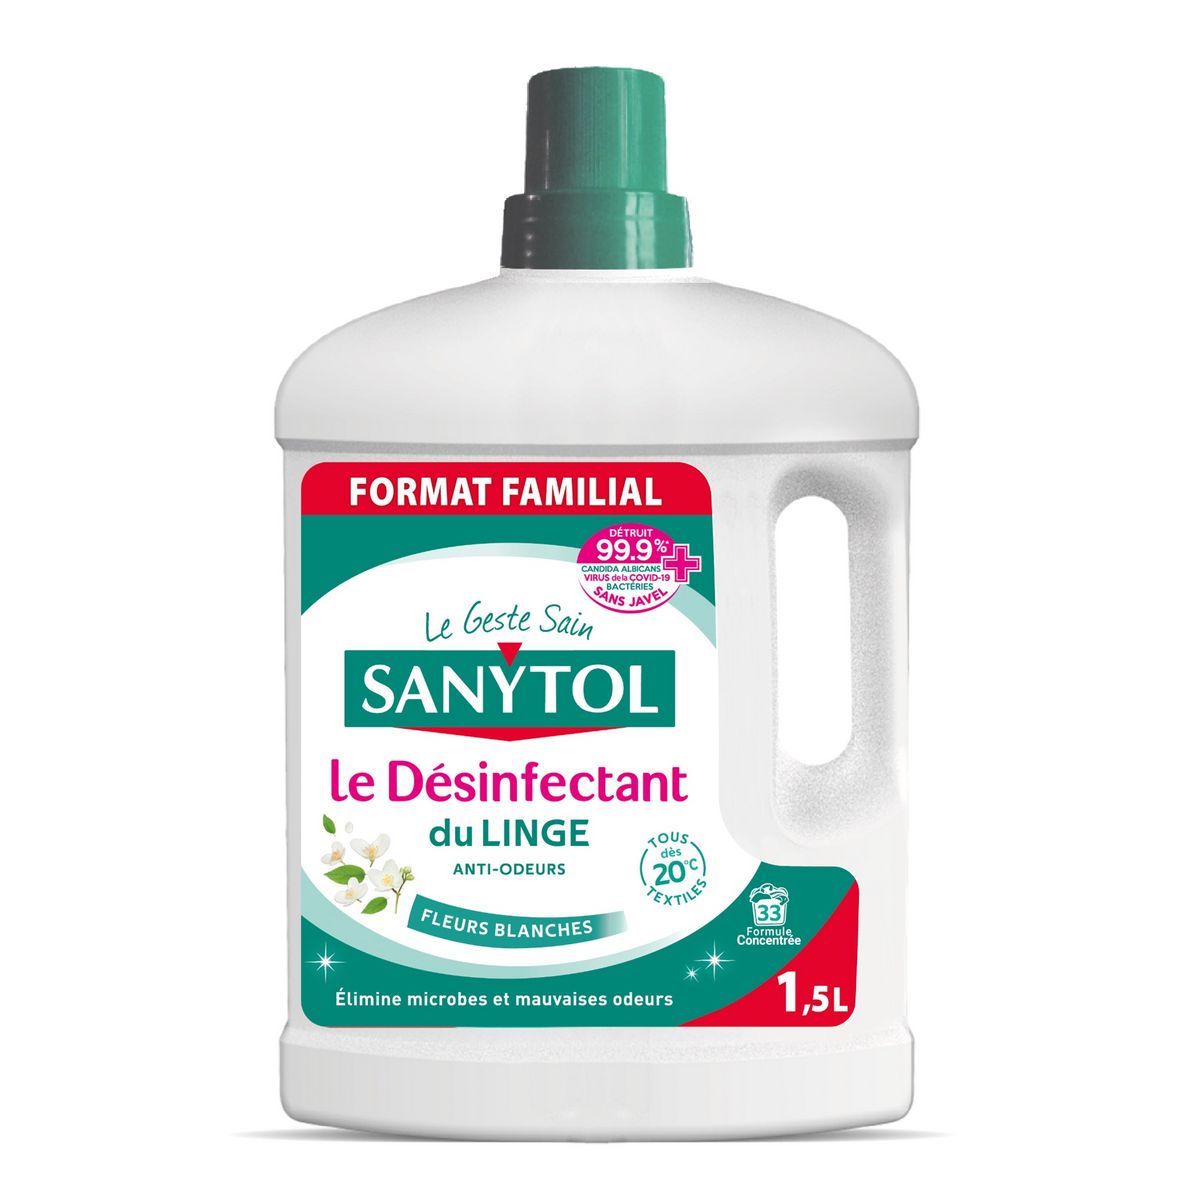 SANYTOL Désinfectant du linge anti-odeurs fleurs blanches Format familial 1,5l